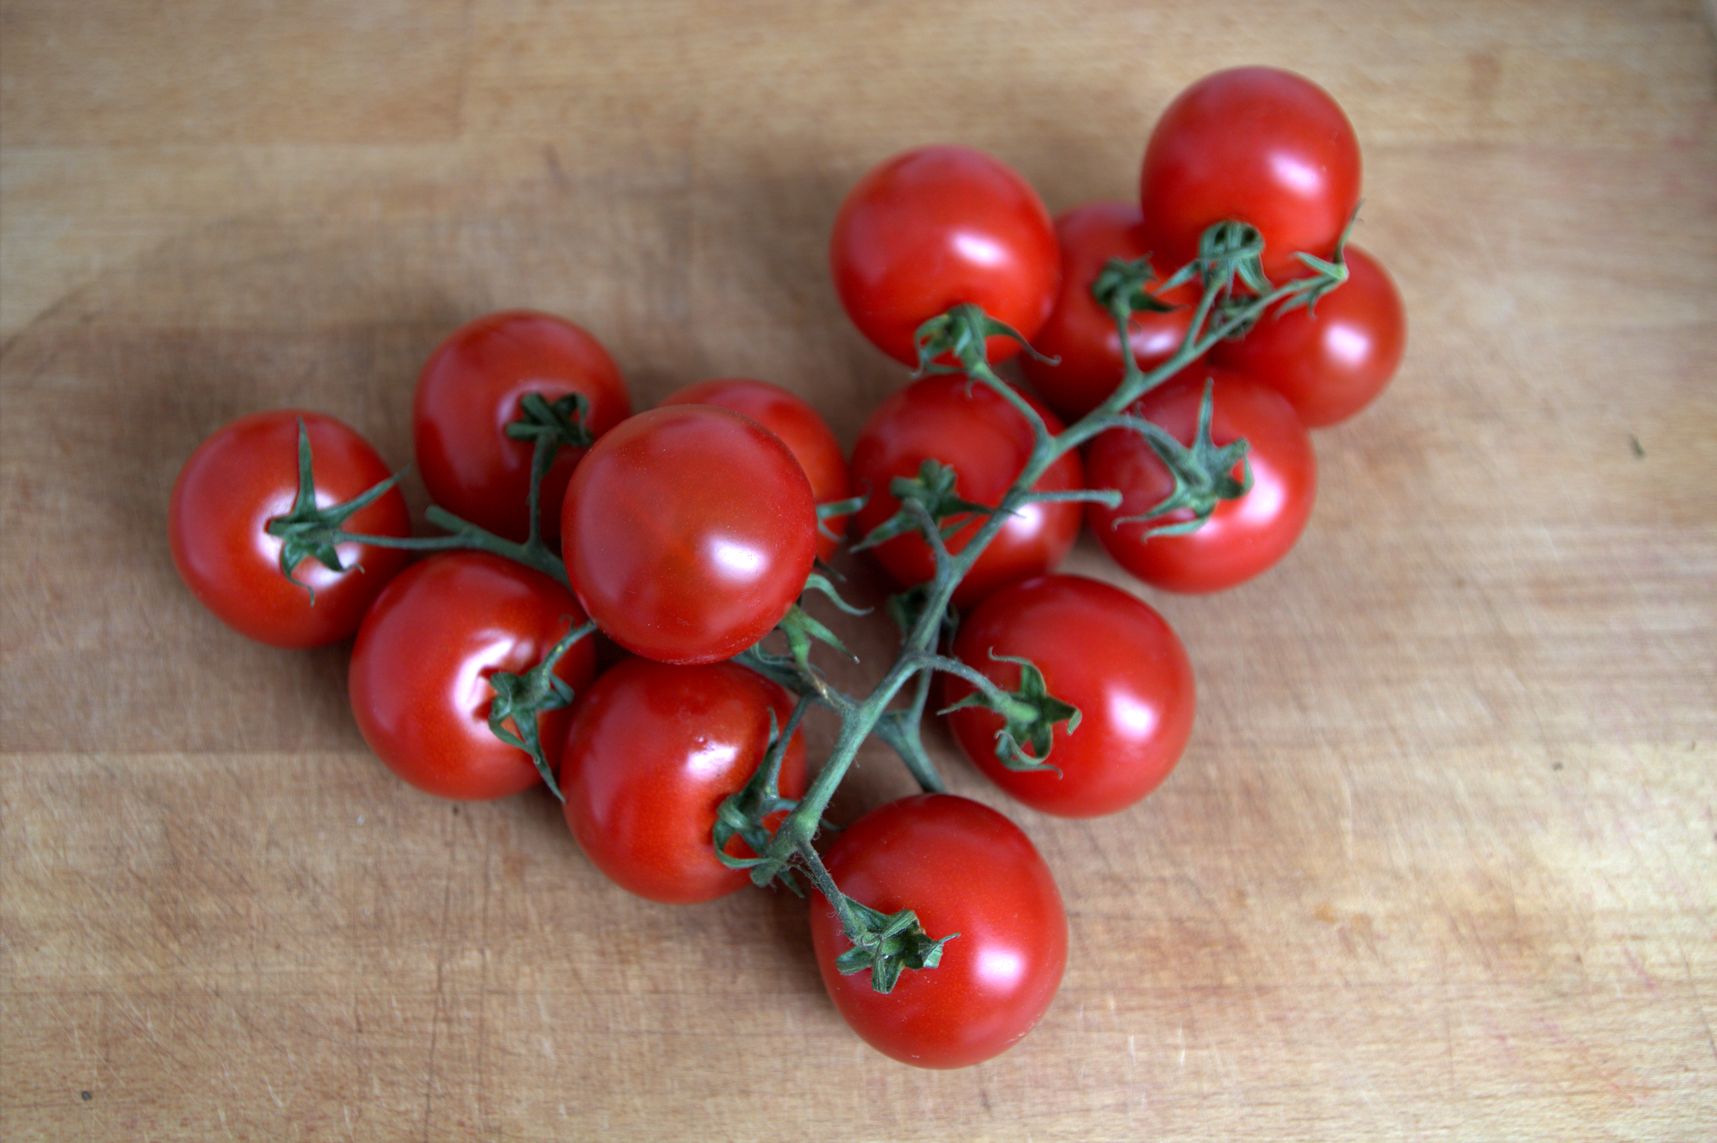 Sinkender Nährstoffgehalt in Tomaten